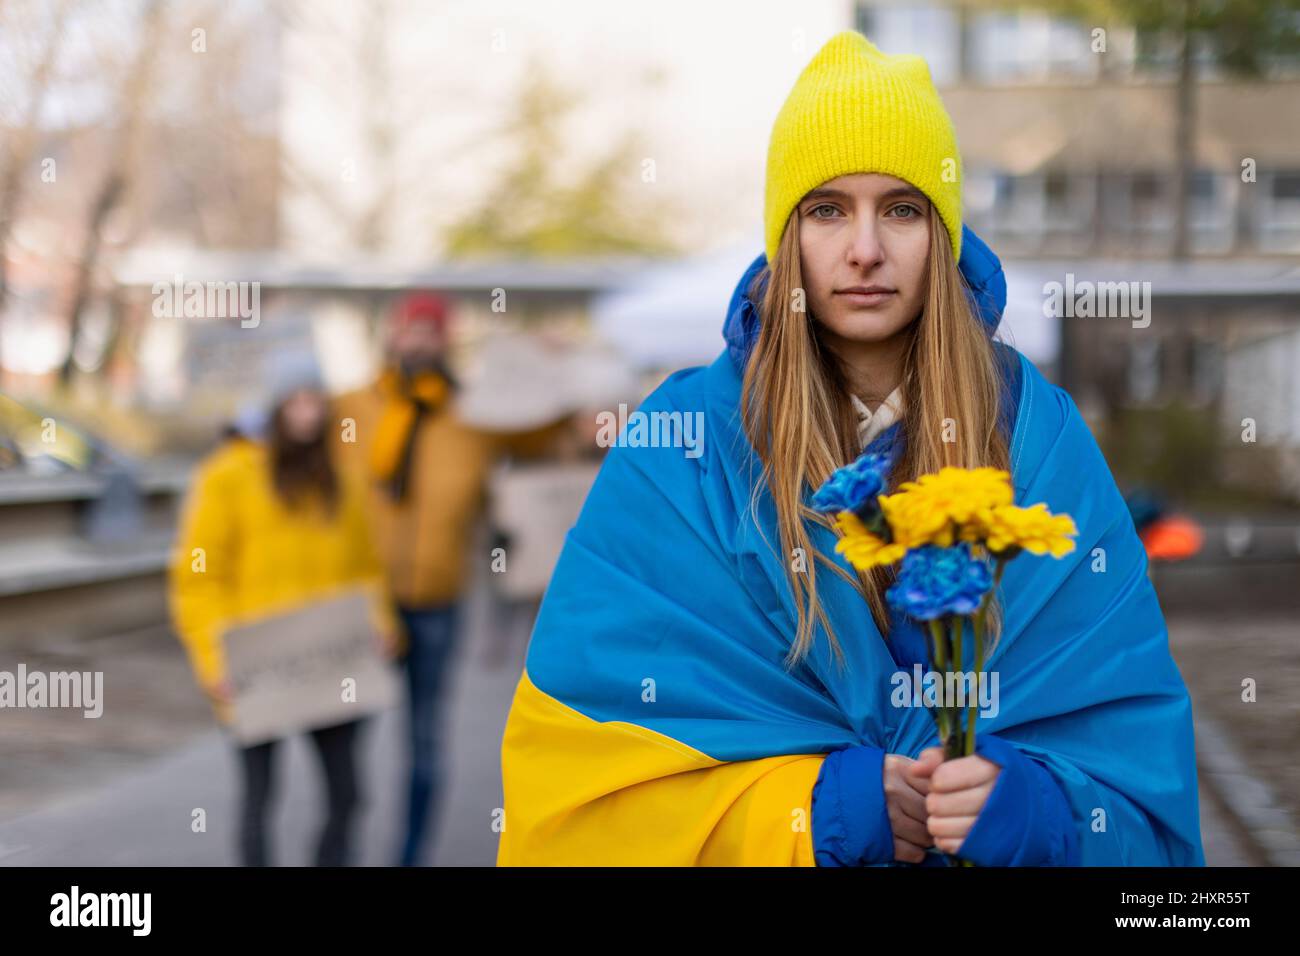 Protest gegen russische Invasion in der Ukraine. Junge Frau in ukrainische Flagge gehüllt mit blauen und gelben Blumen. Stockfoto